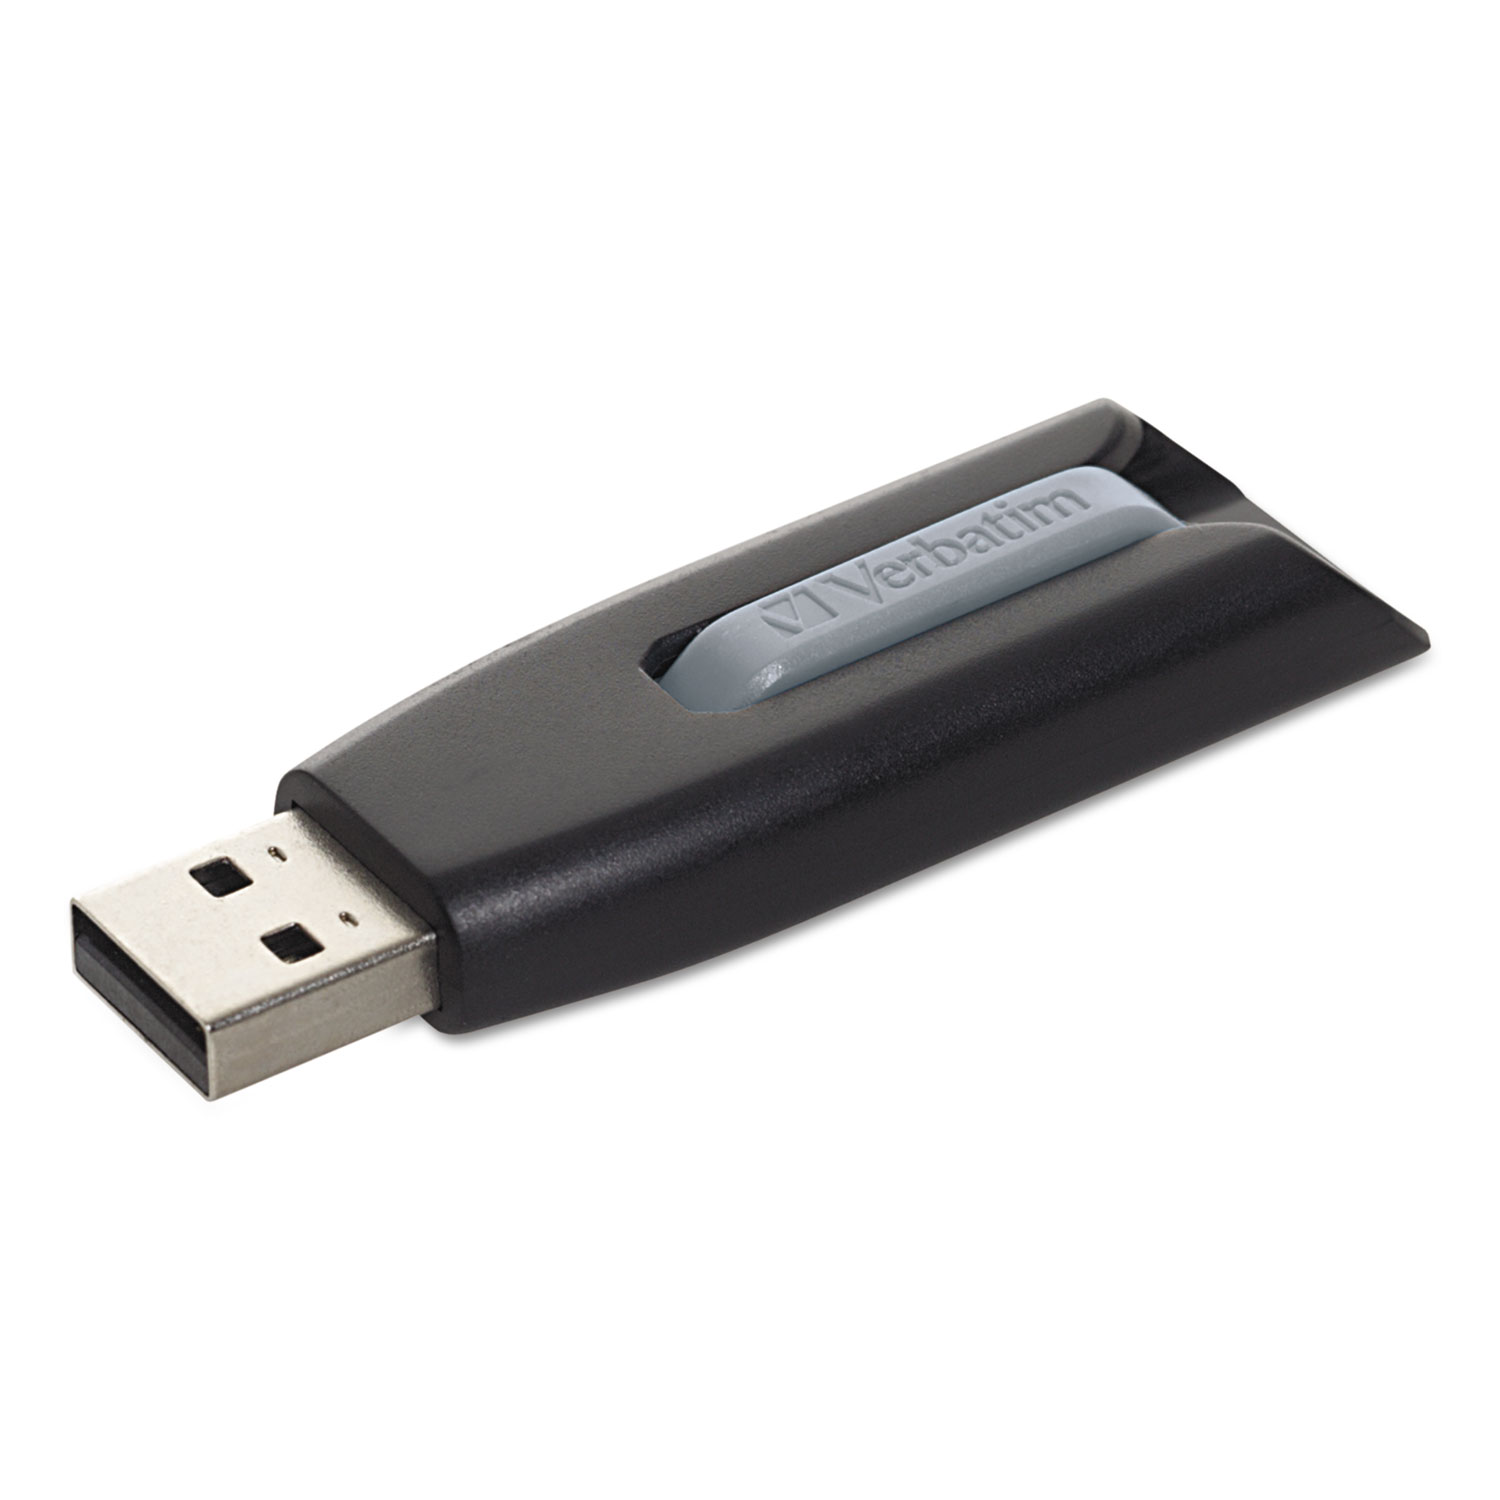  Verbatim 49173 Store 'n' Go V3 USB 3.0 Drive, 32 GB, Black/Gray (VER49173) 